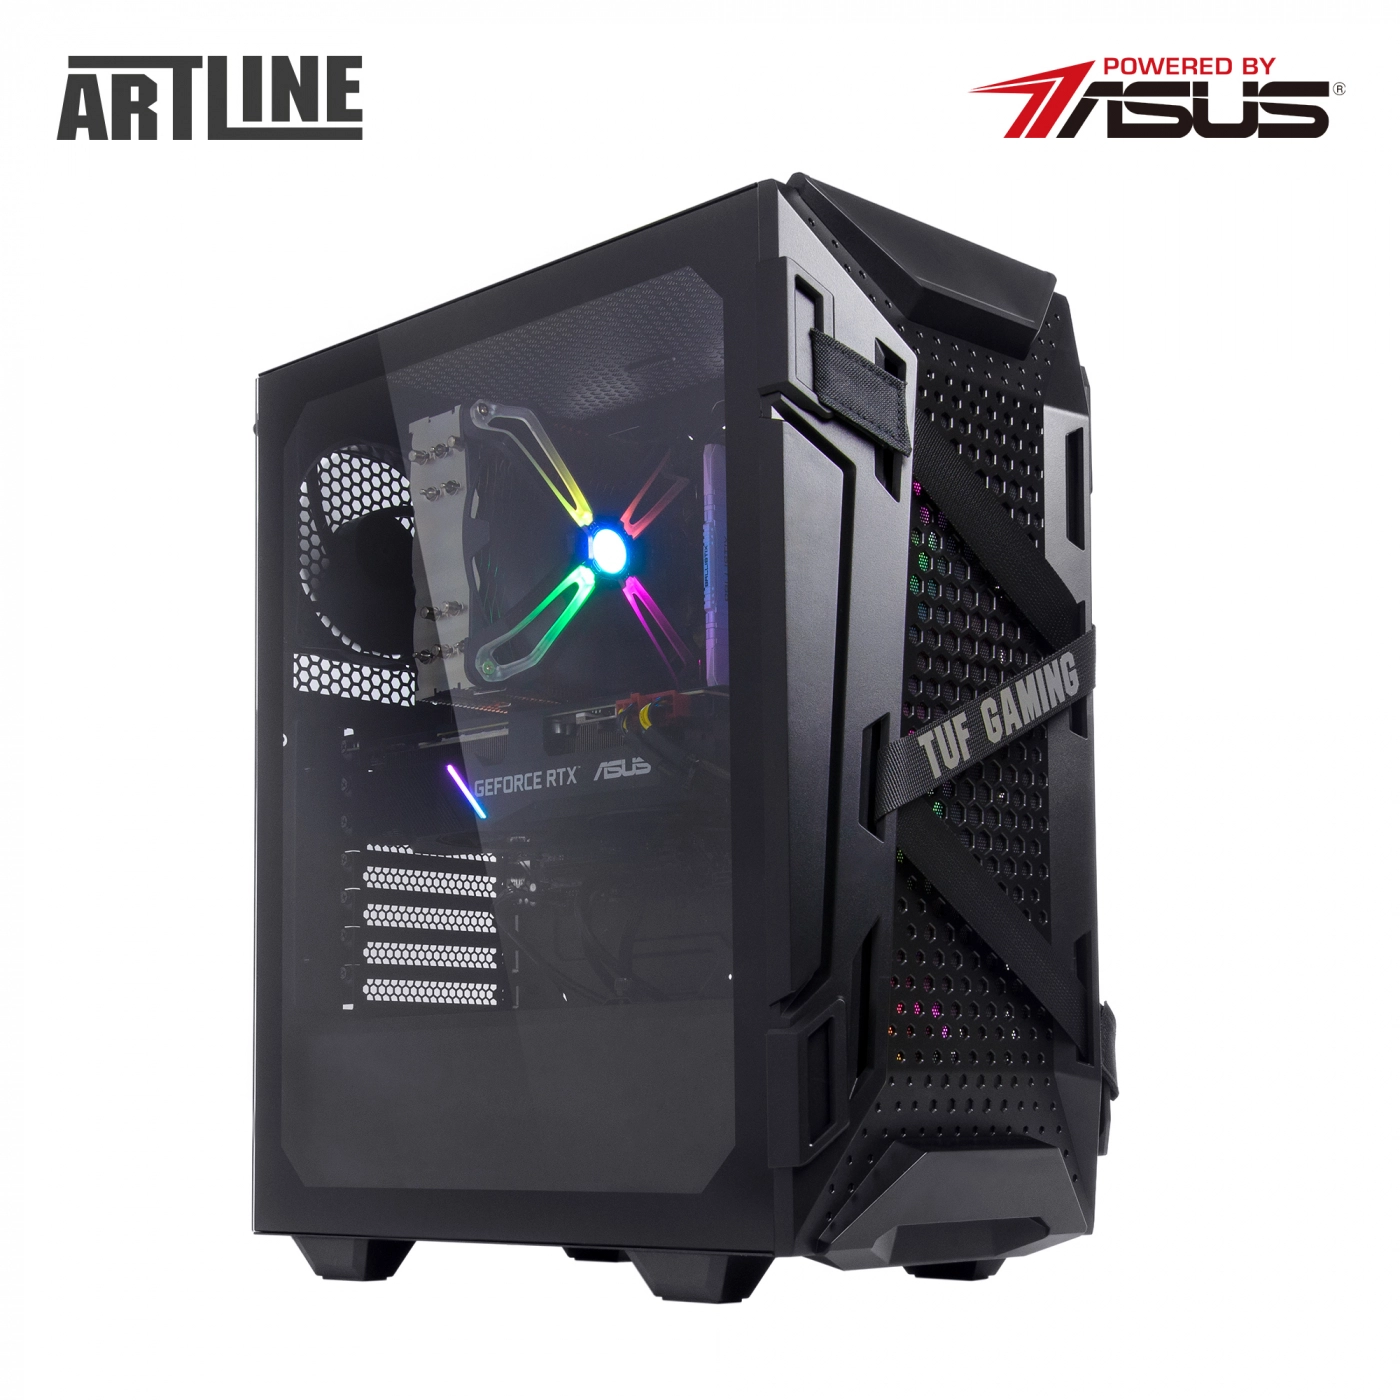 Купить Компьютер ARTLINE Gaming TUFv20 - фото 13